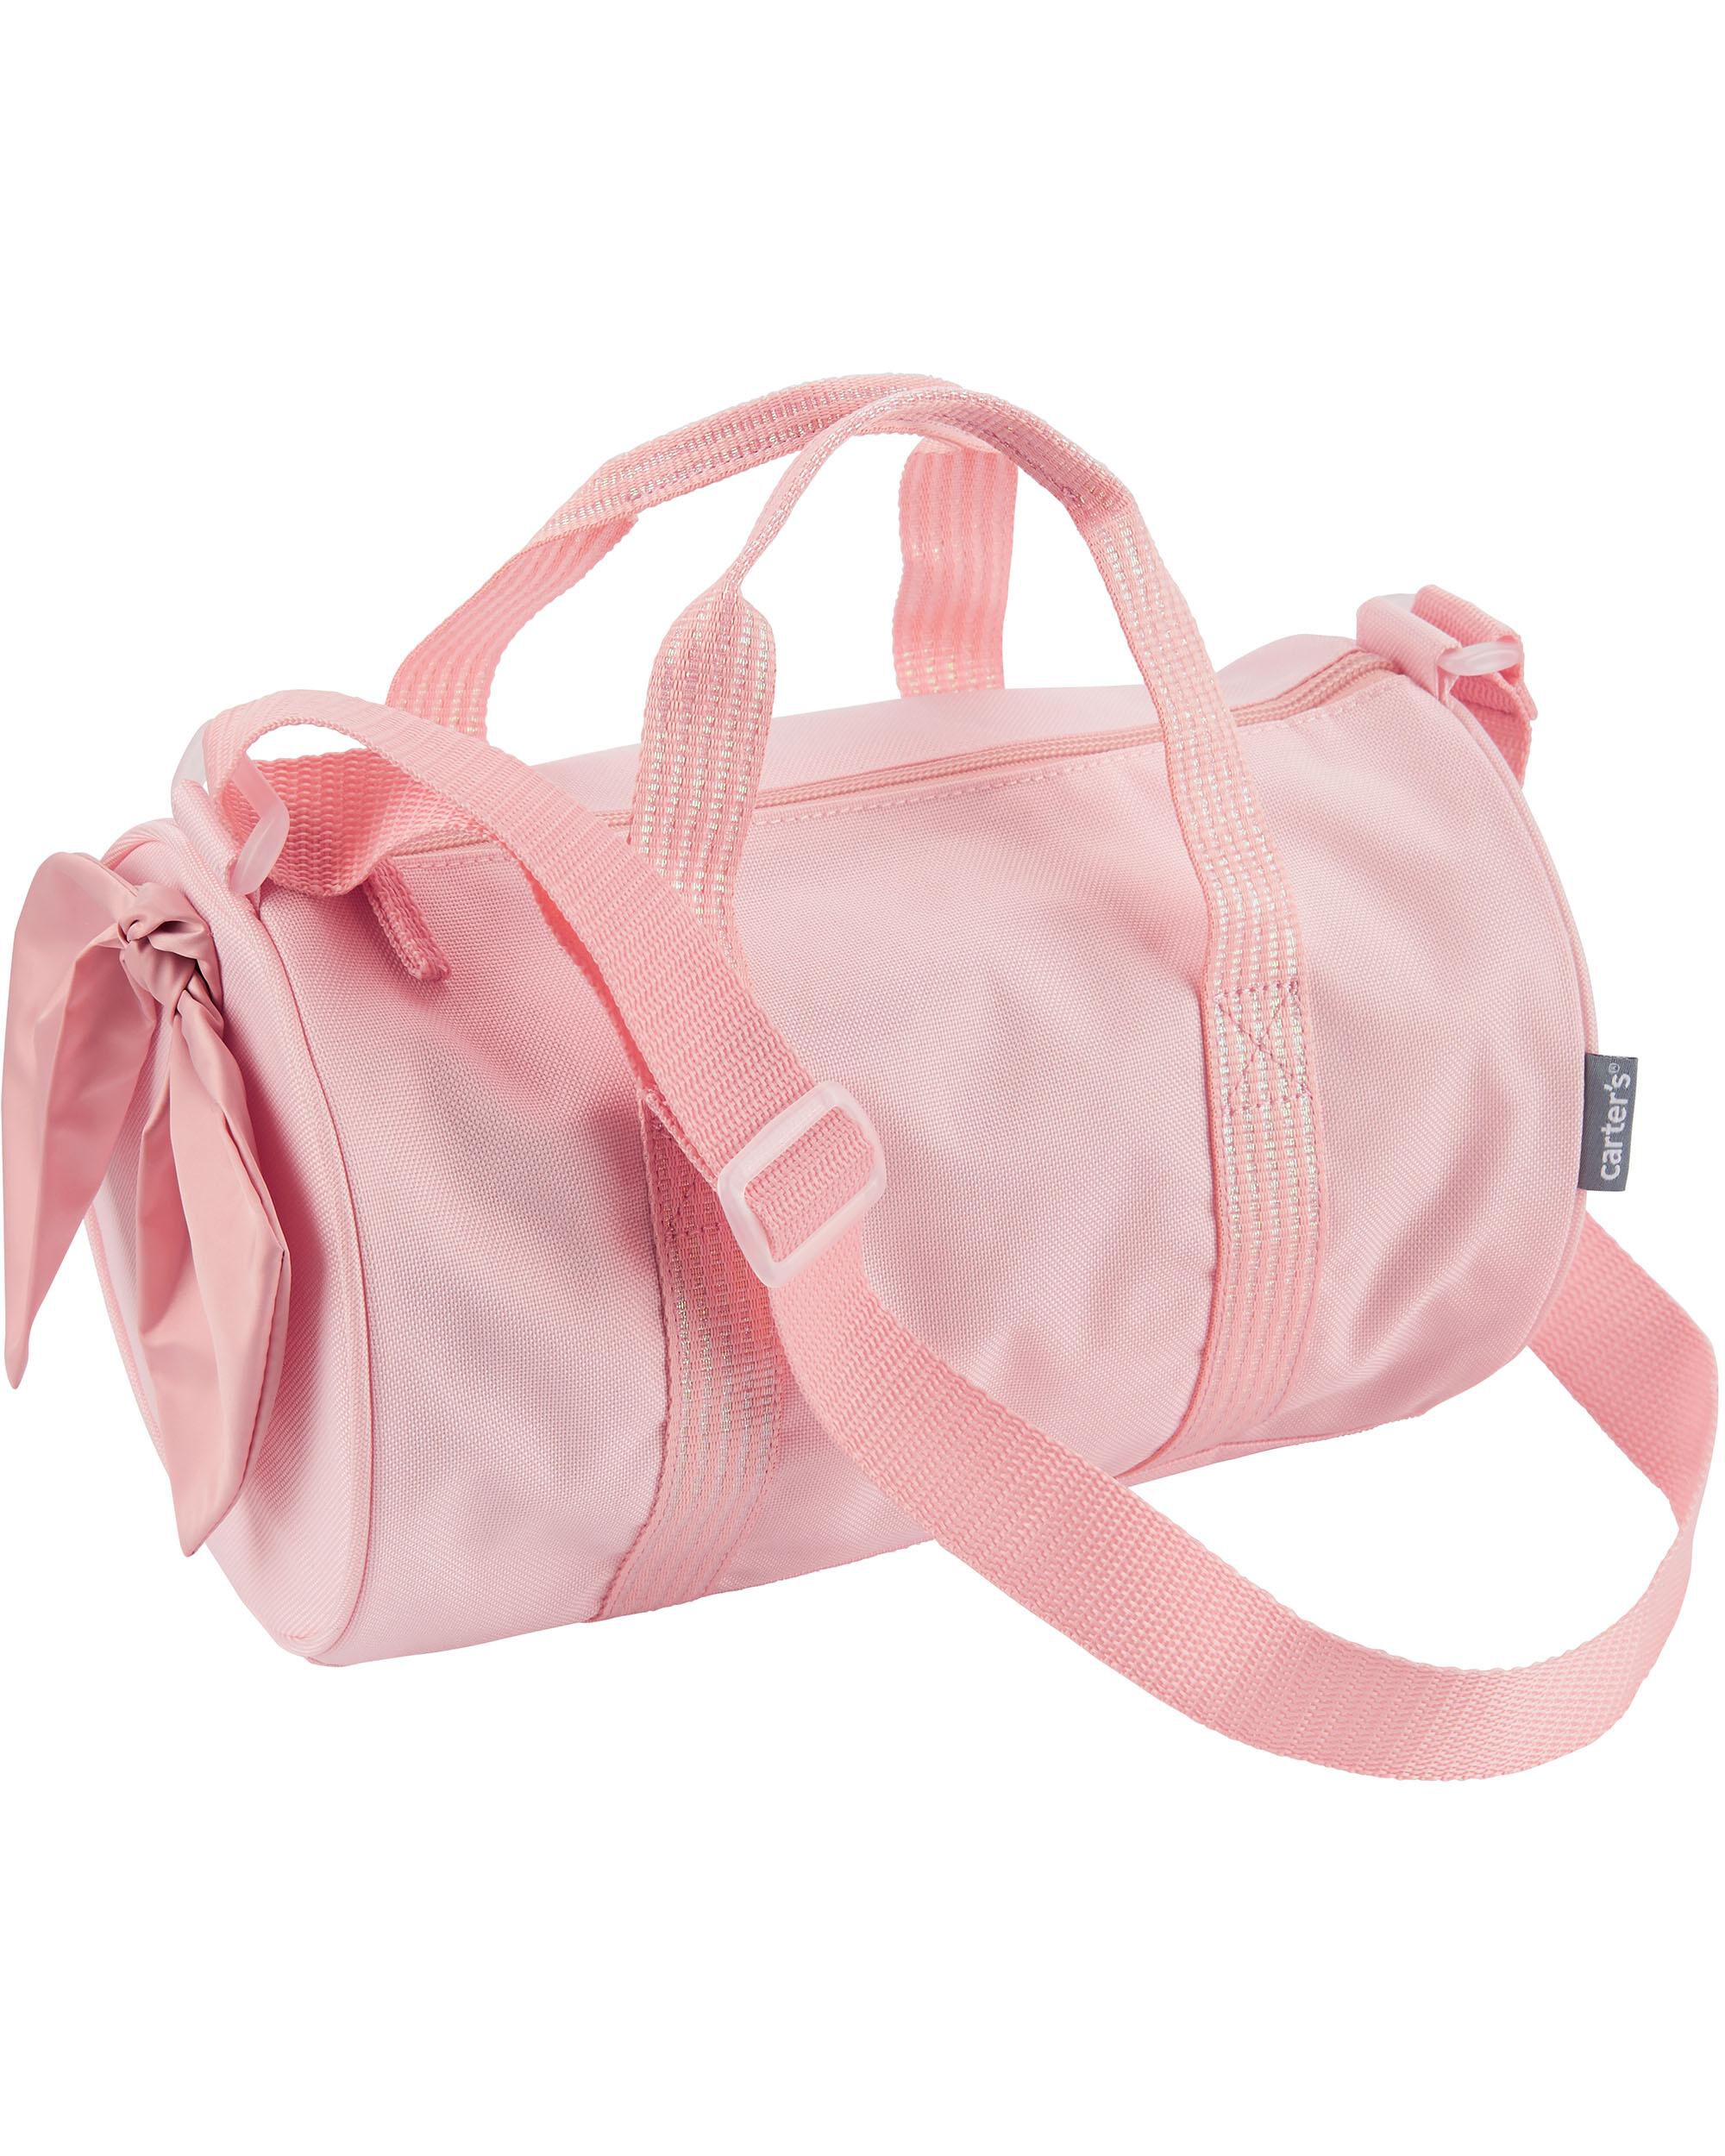 JUSTSTAR Dance bag new children's one-shoulder dance backpack Latin ballet  bag girl princess dance bag | Lazada